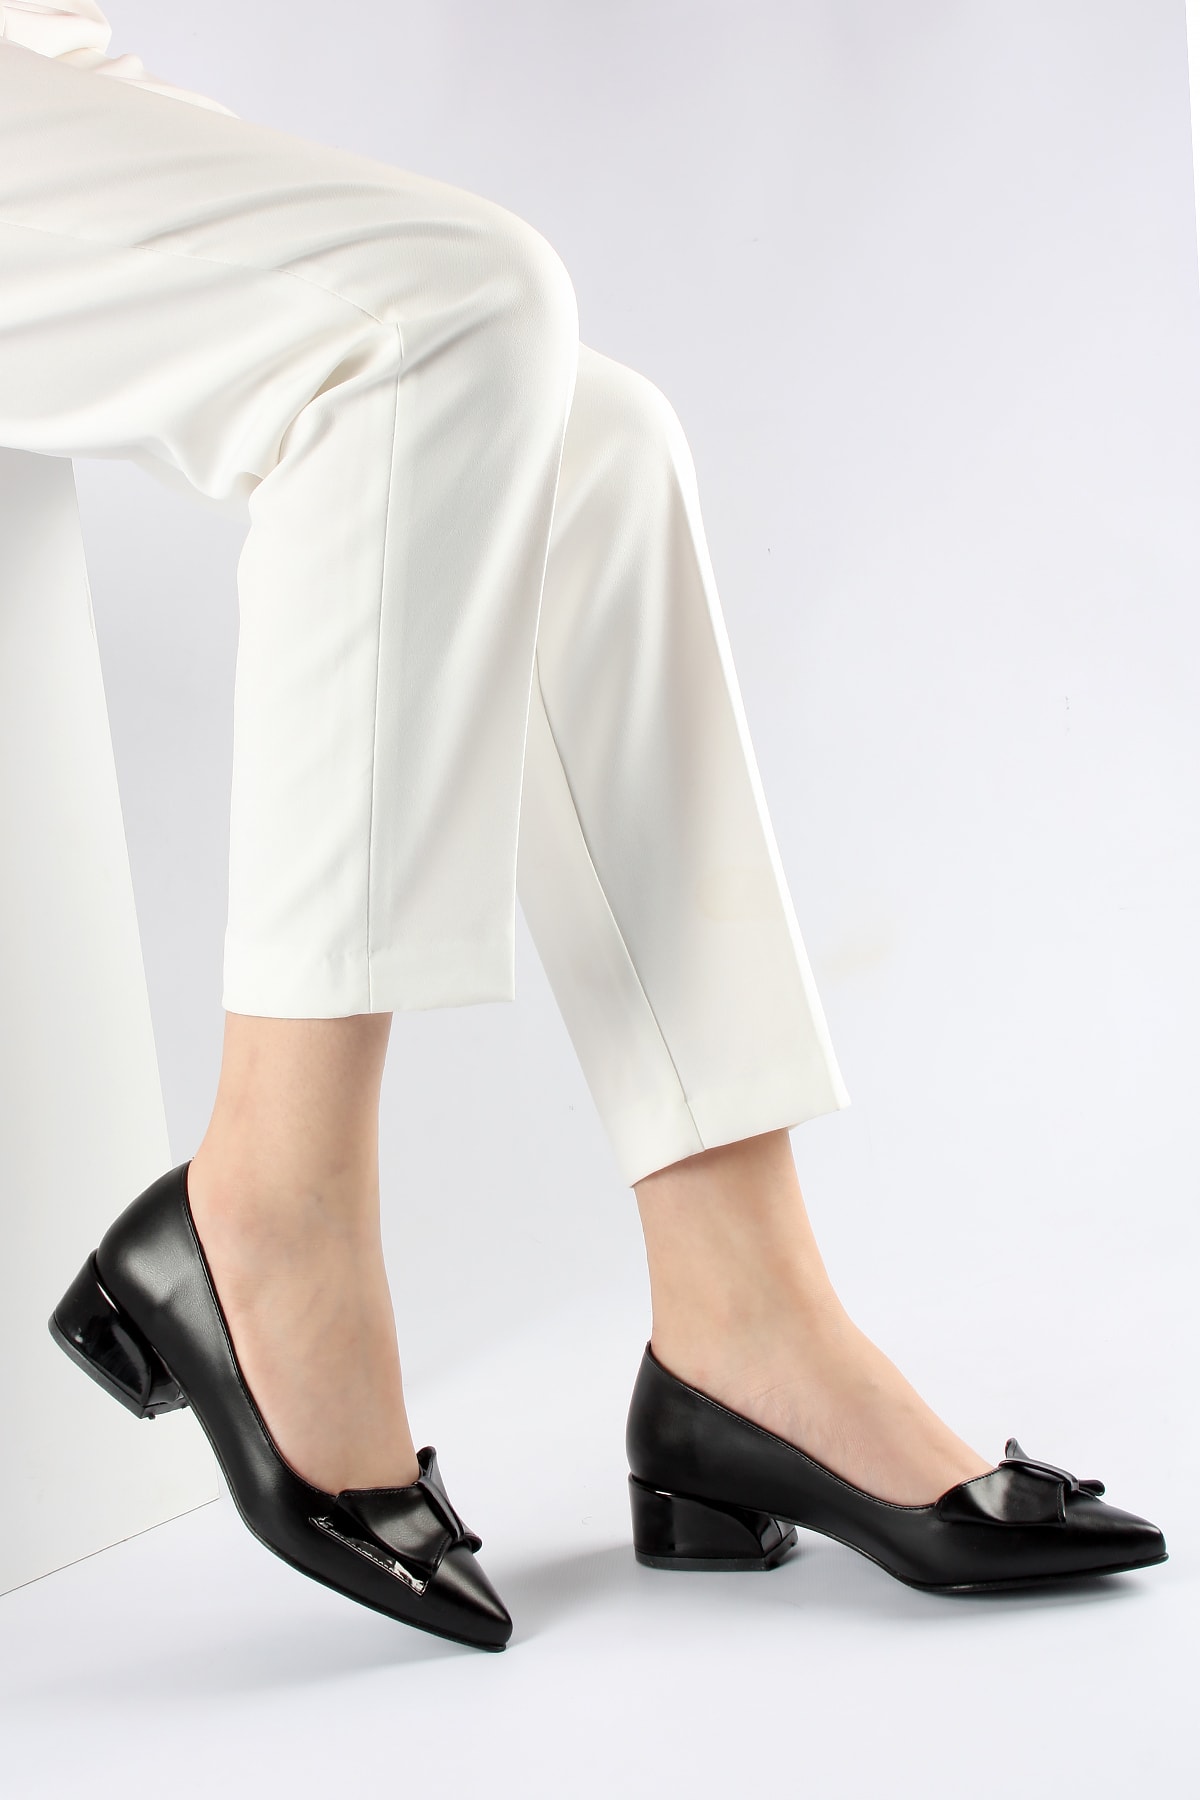 FORS SHOES Siyah Cilt Fiyonklu Klasik Kadın Ayakkabı Kısa Topuk 3.5 Cm